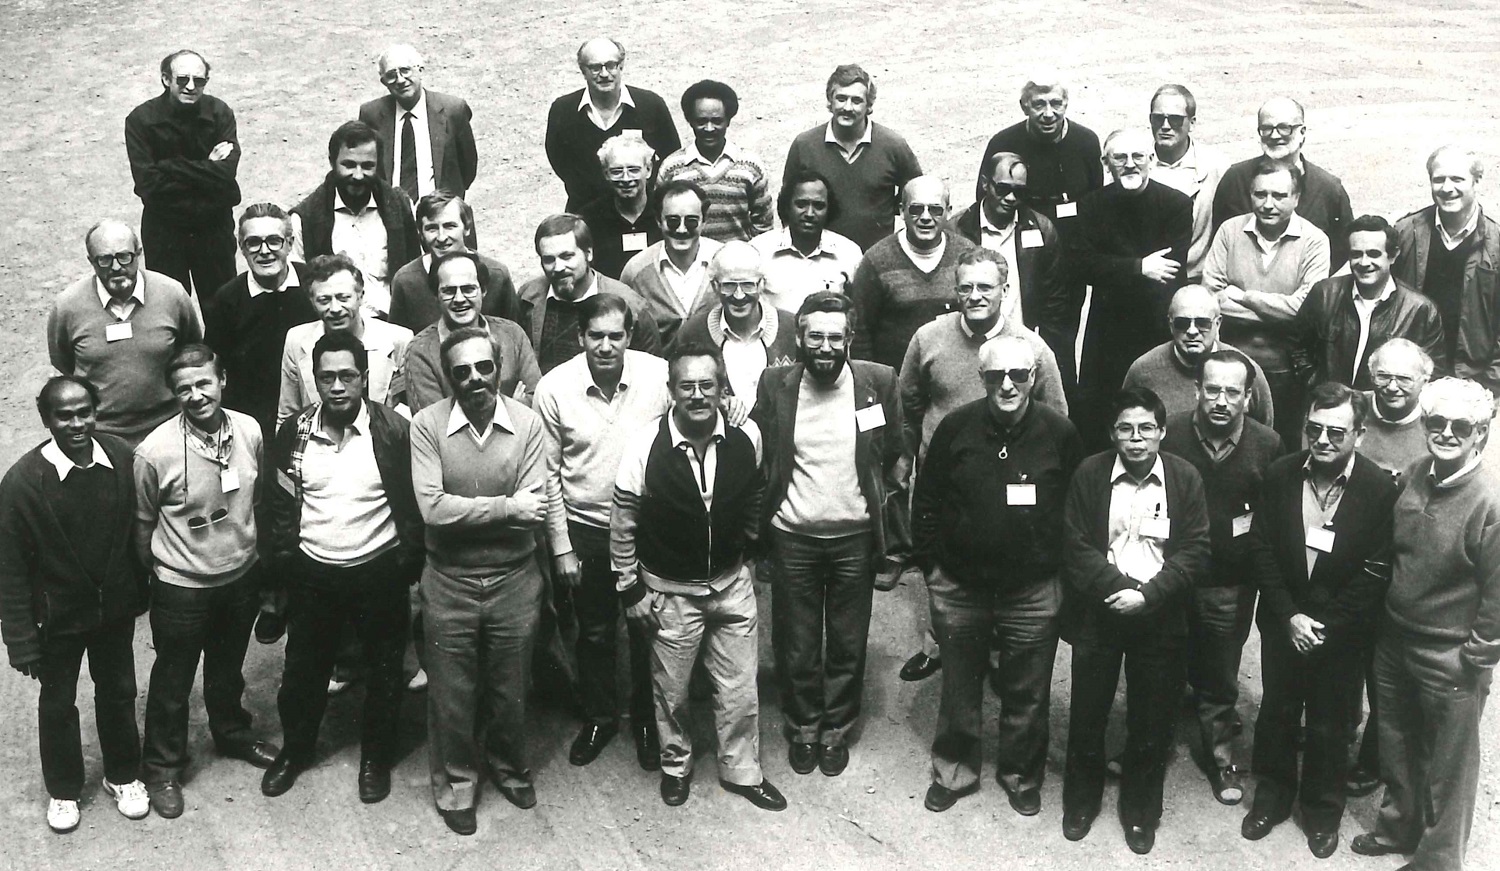 1987 meeting of directors